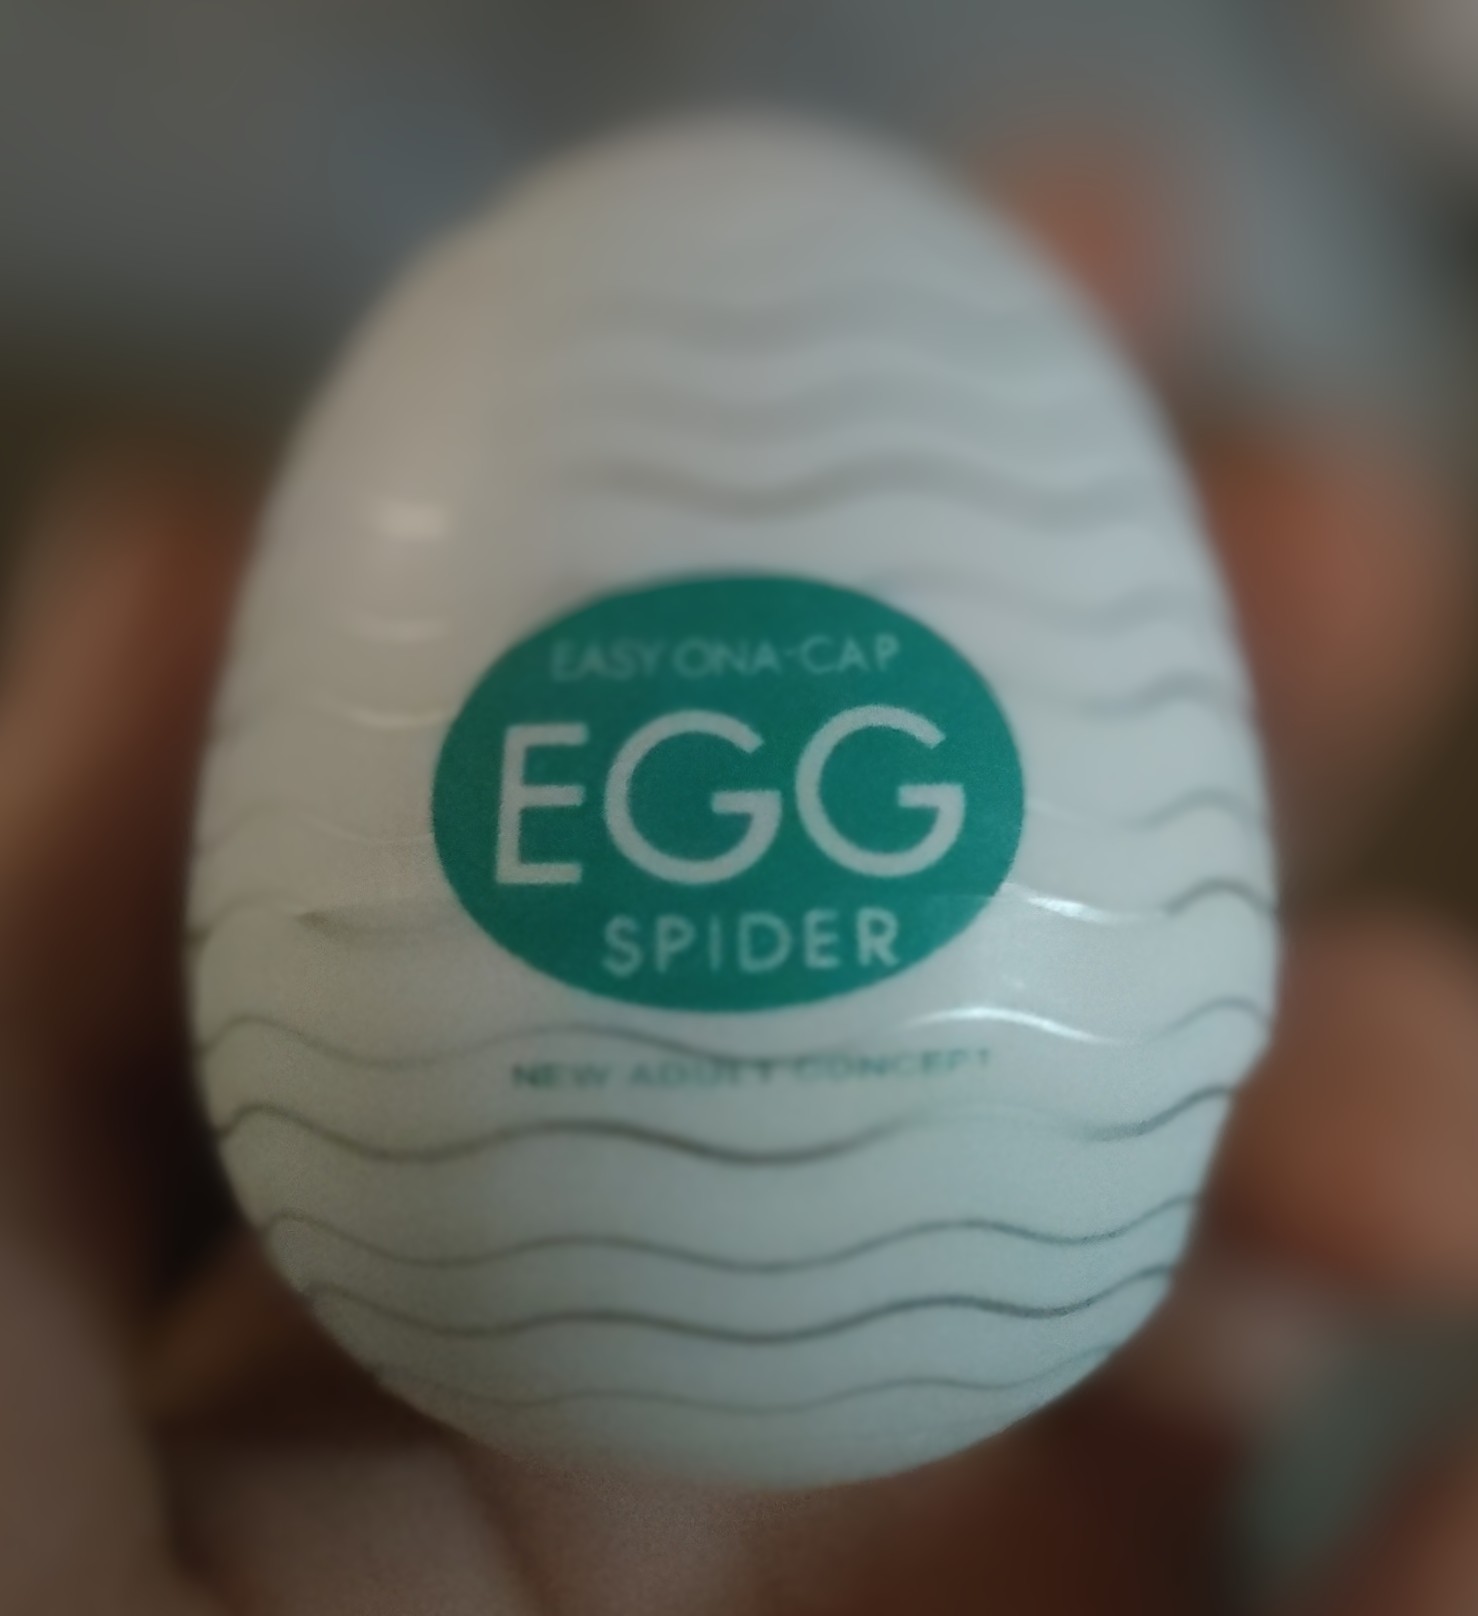 Egg-celent fun for grownups